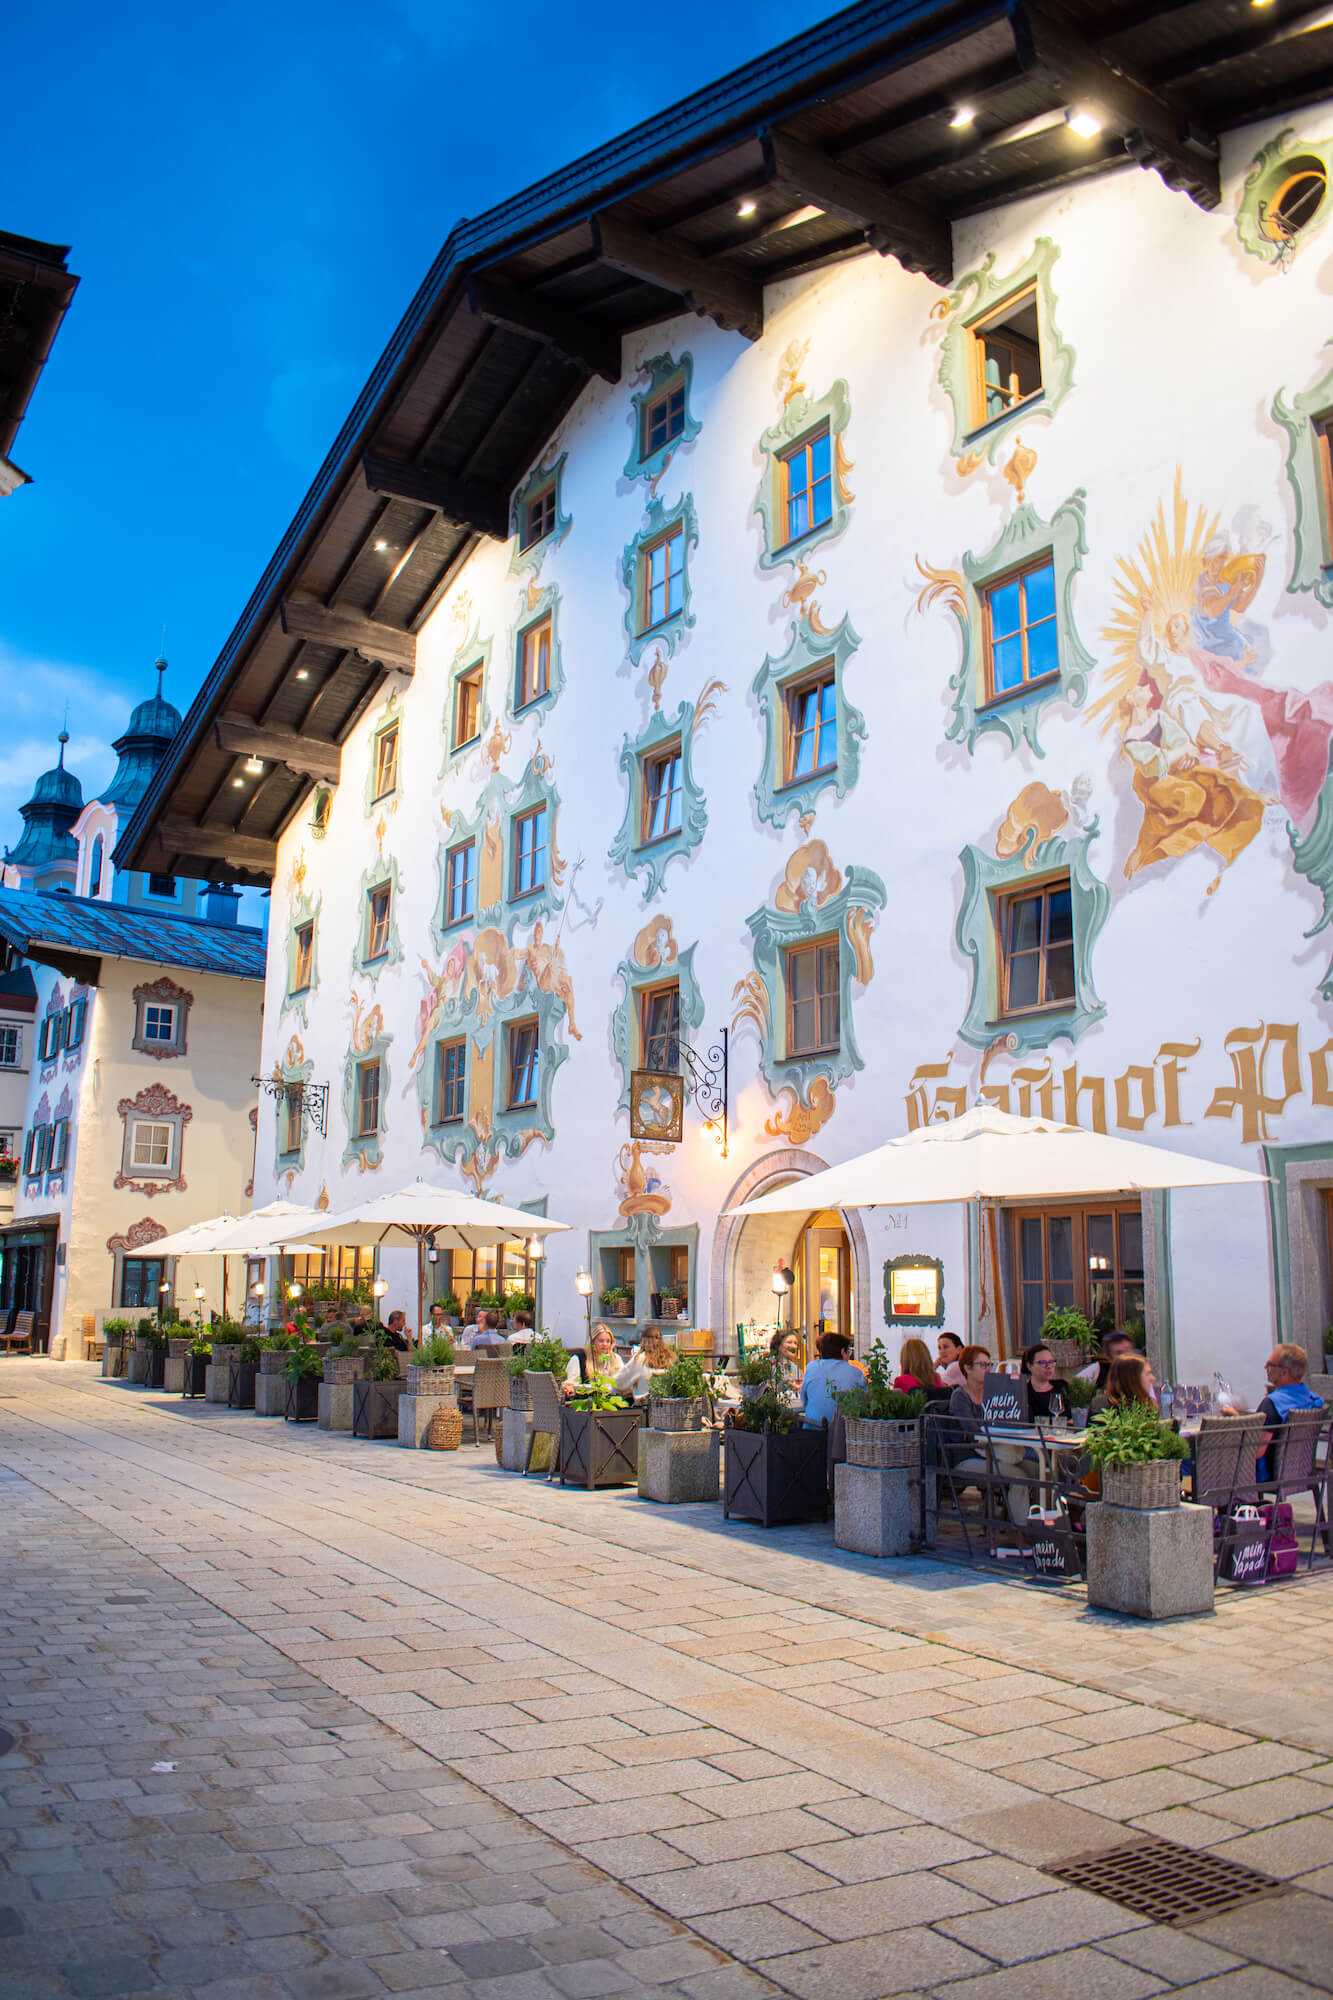 Hotel Wirtshaus, Tirolsko, Rakúsko